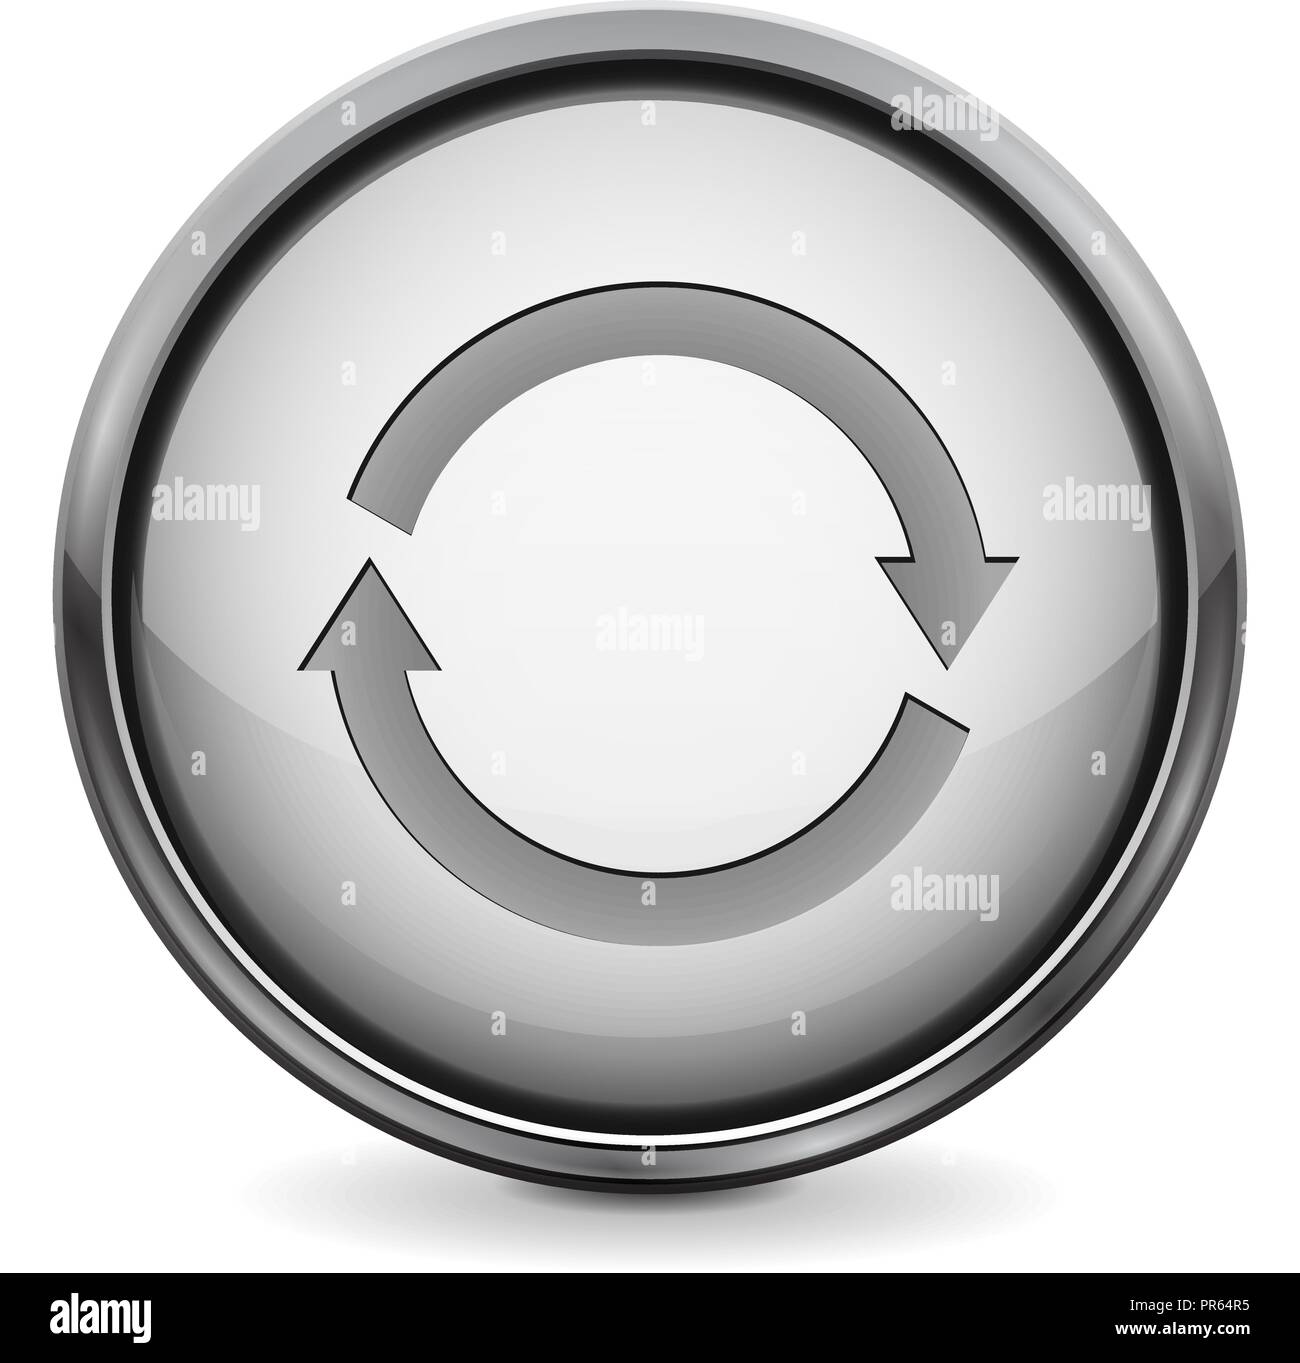 Schaltfläche "Aktualisieren". 3d-weiße runde Symbol Stock Vektor